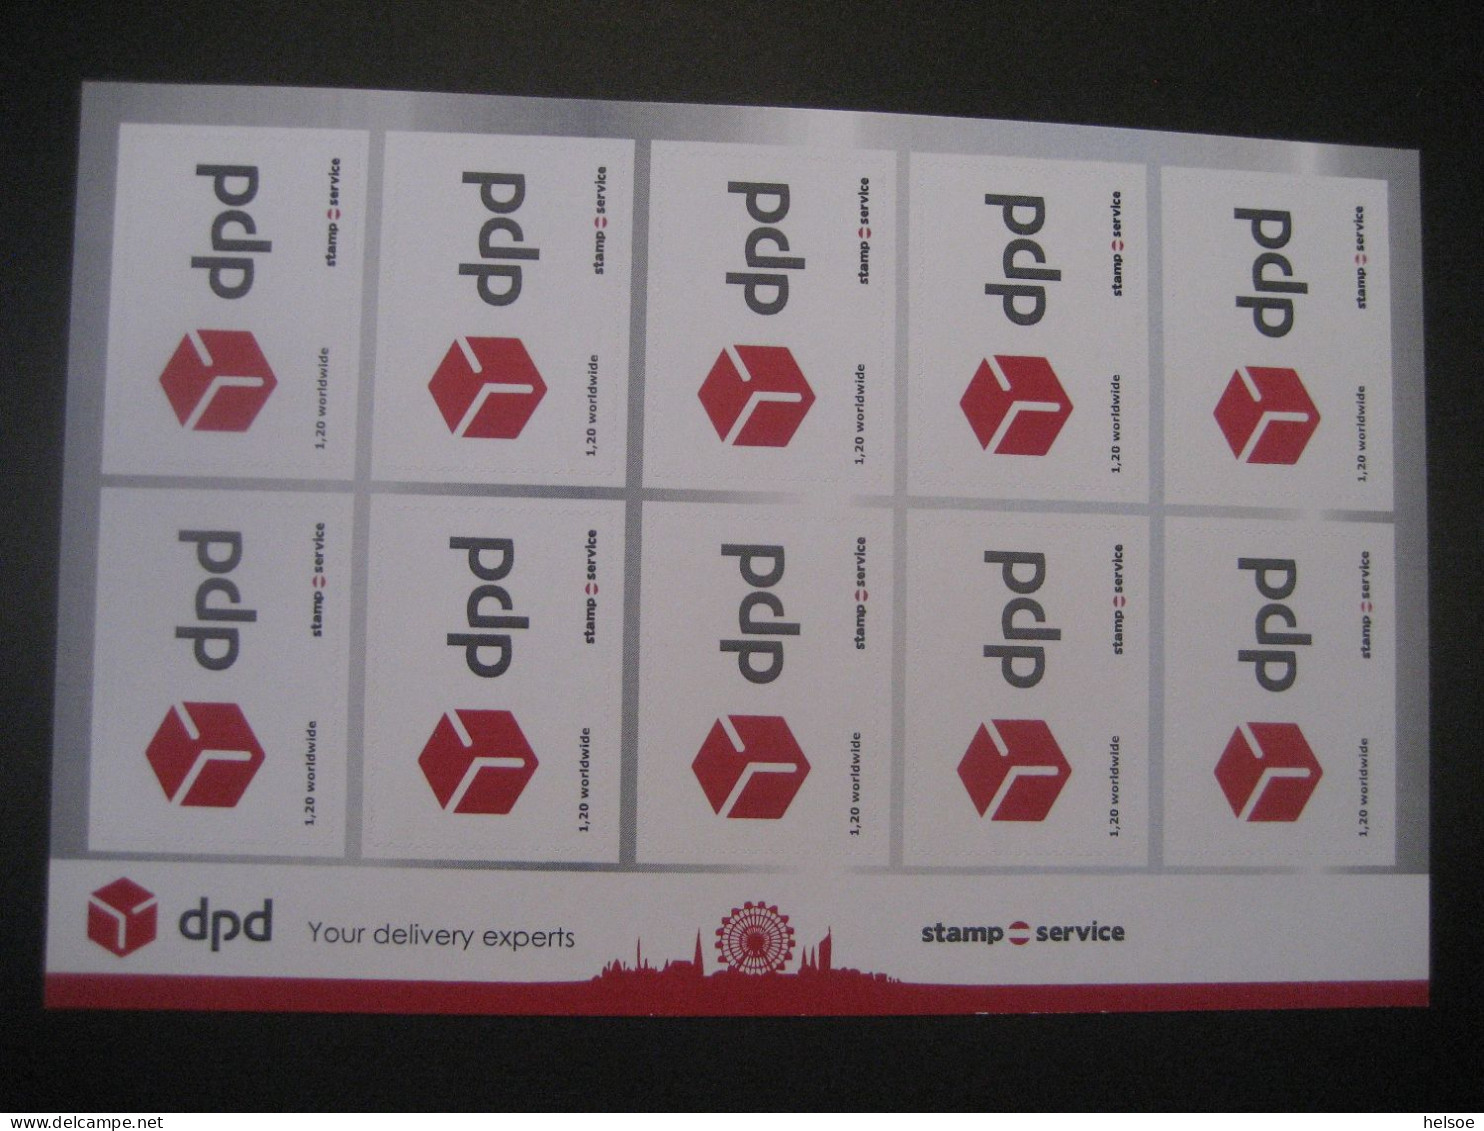 Österreich- Worldwide Stampservice, Dpd, Your Delivery Experts Ungebraucht Und Selbstklebend - Errors & Oddities